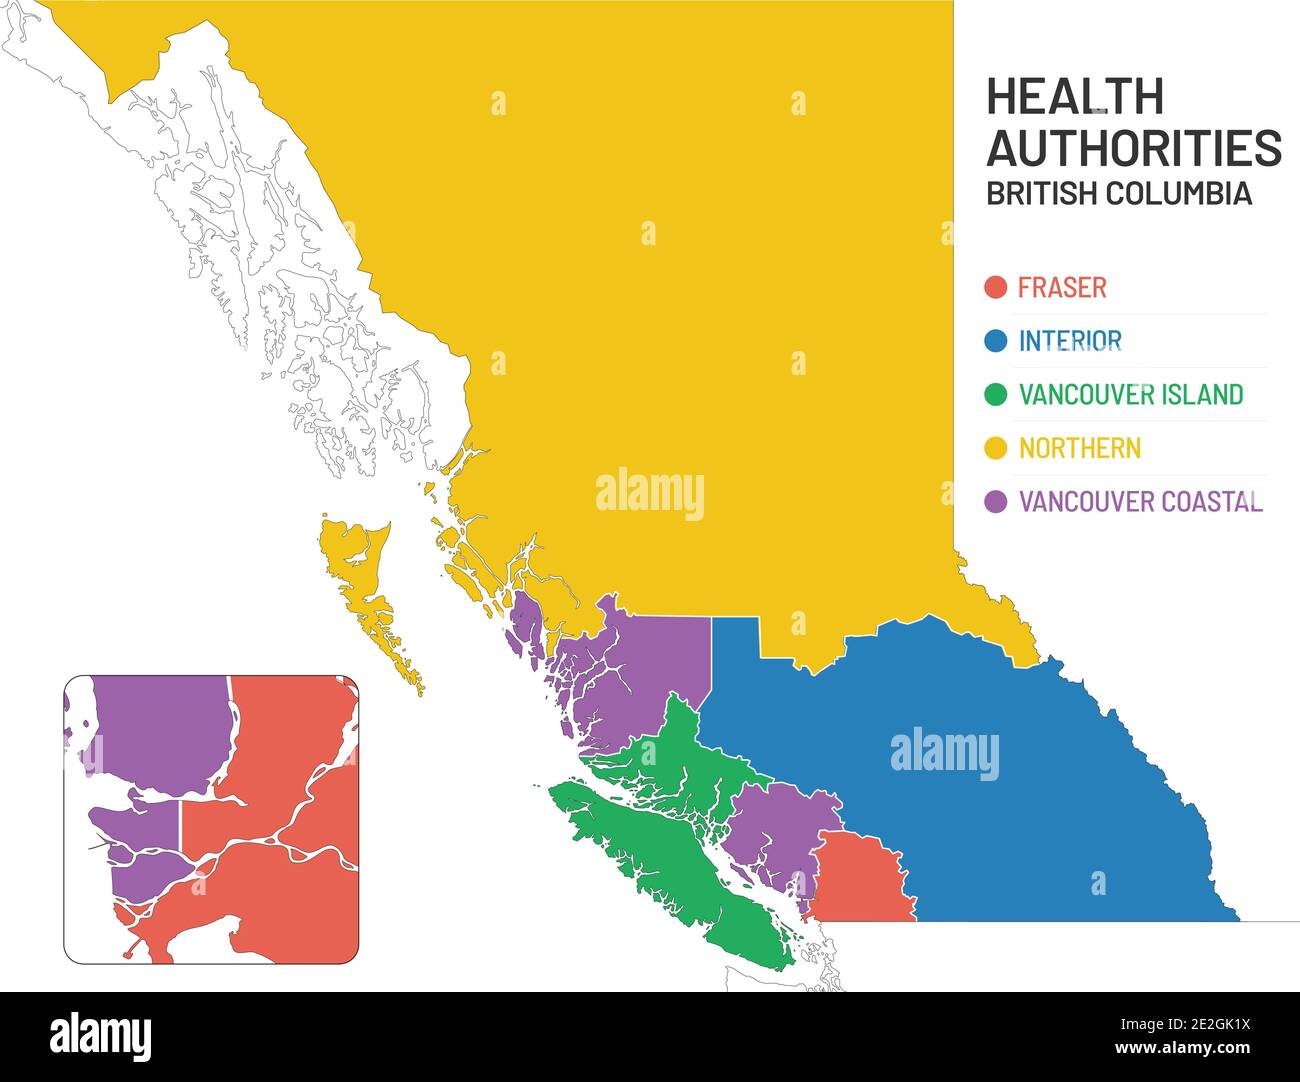 Karte der Gesundheitsbehörden von British Columbia. Einfache Karte von BC Kanada, die die Gesundheitsgrenze für jede Region der Gesundheitsbehörde illustriert und benennt. Stock Vektor